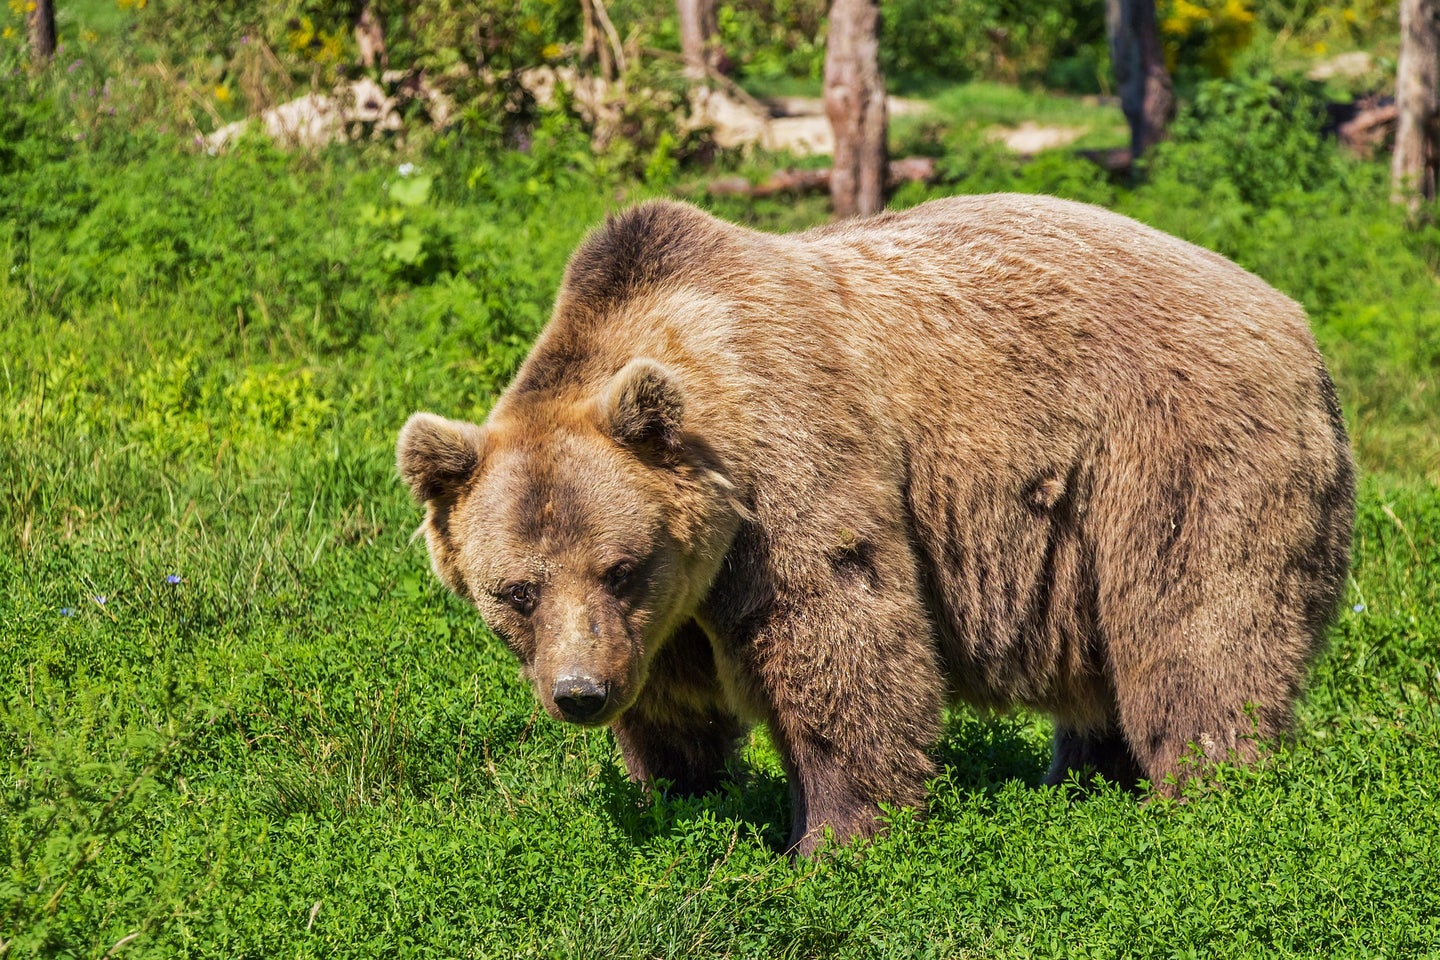 brown bear in a green field.